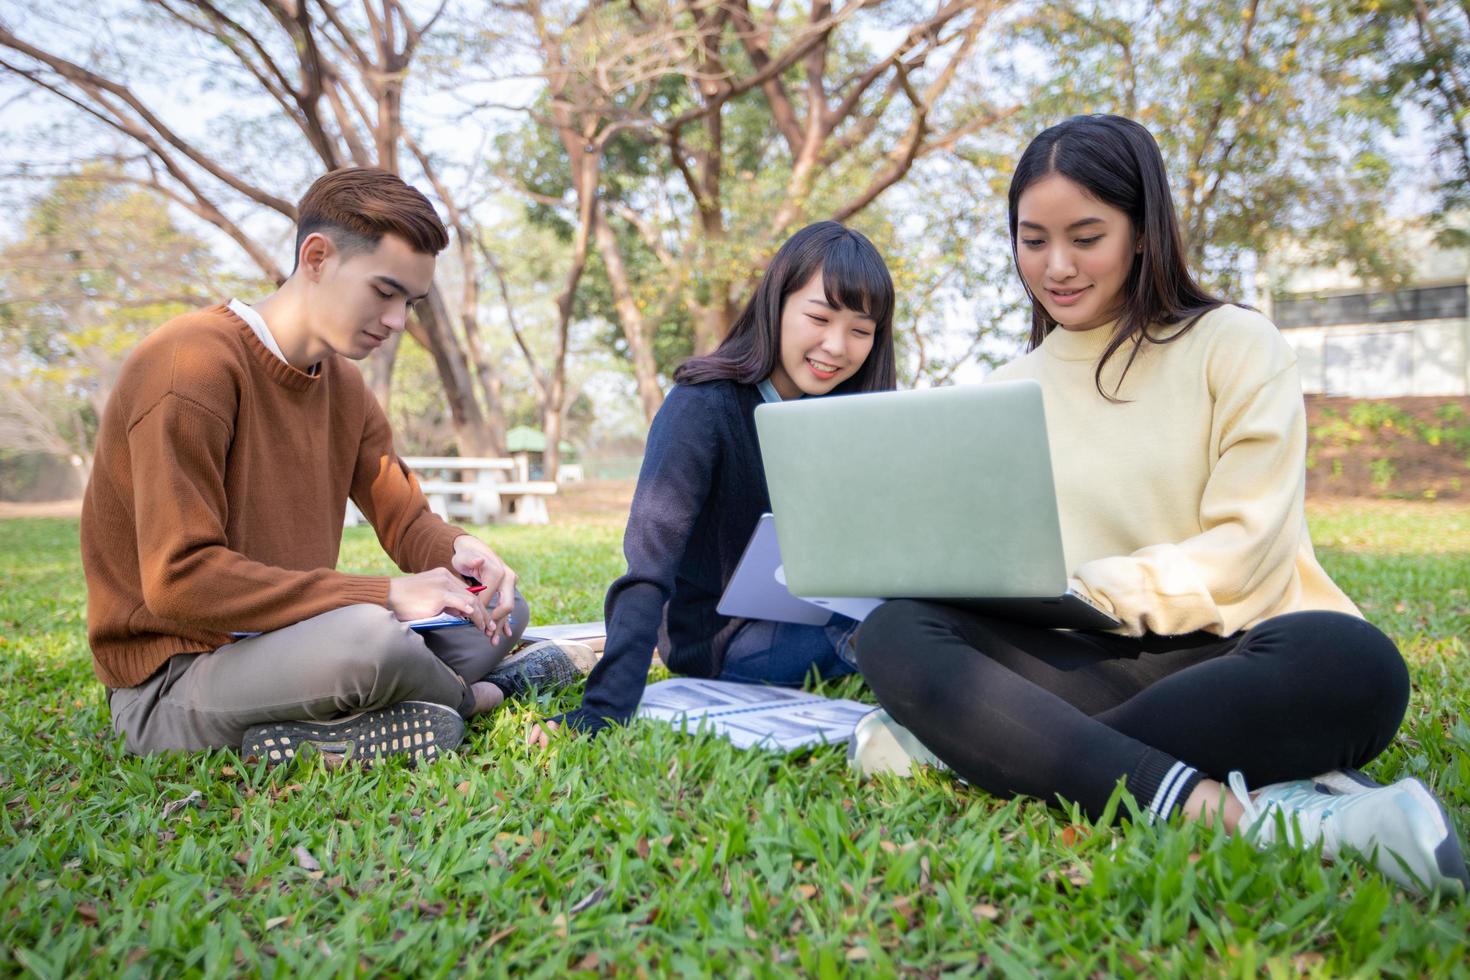 grupo de estudantes universitários asiáticos sentados na grama verde trabalhando e lendo juntos em um parque foto